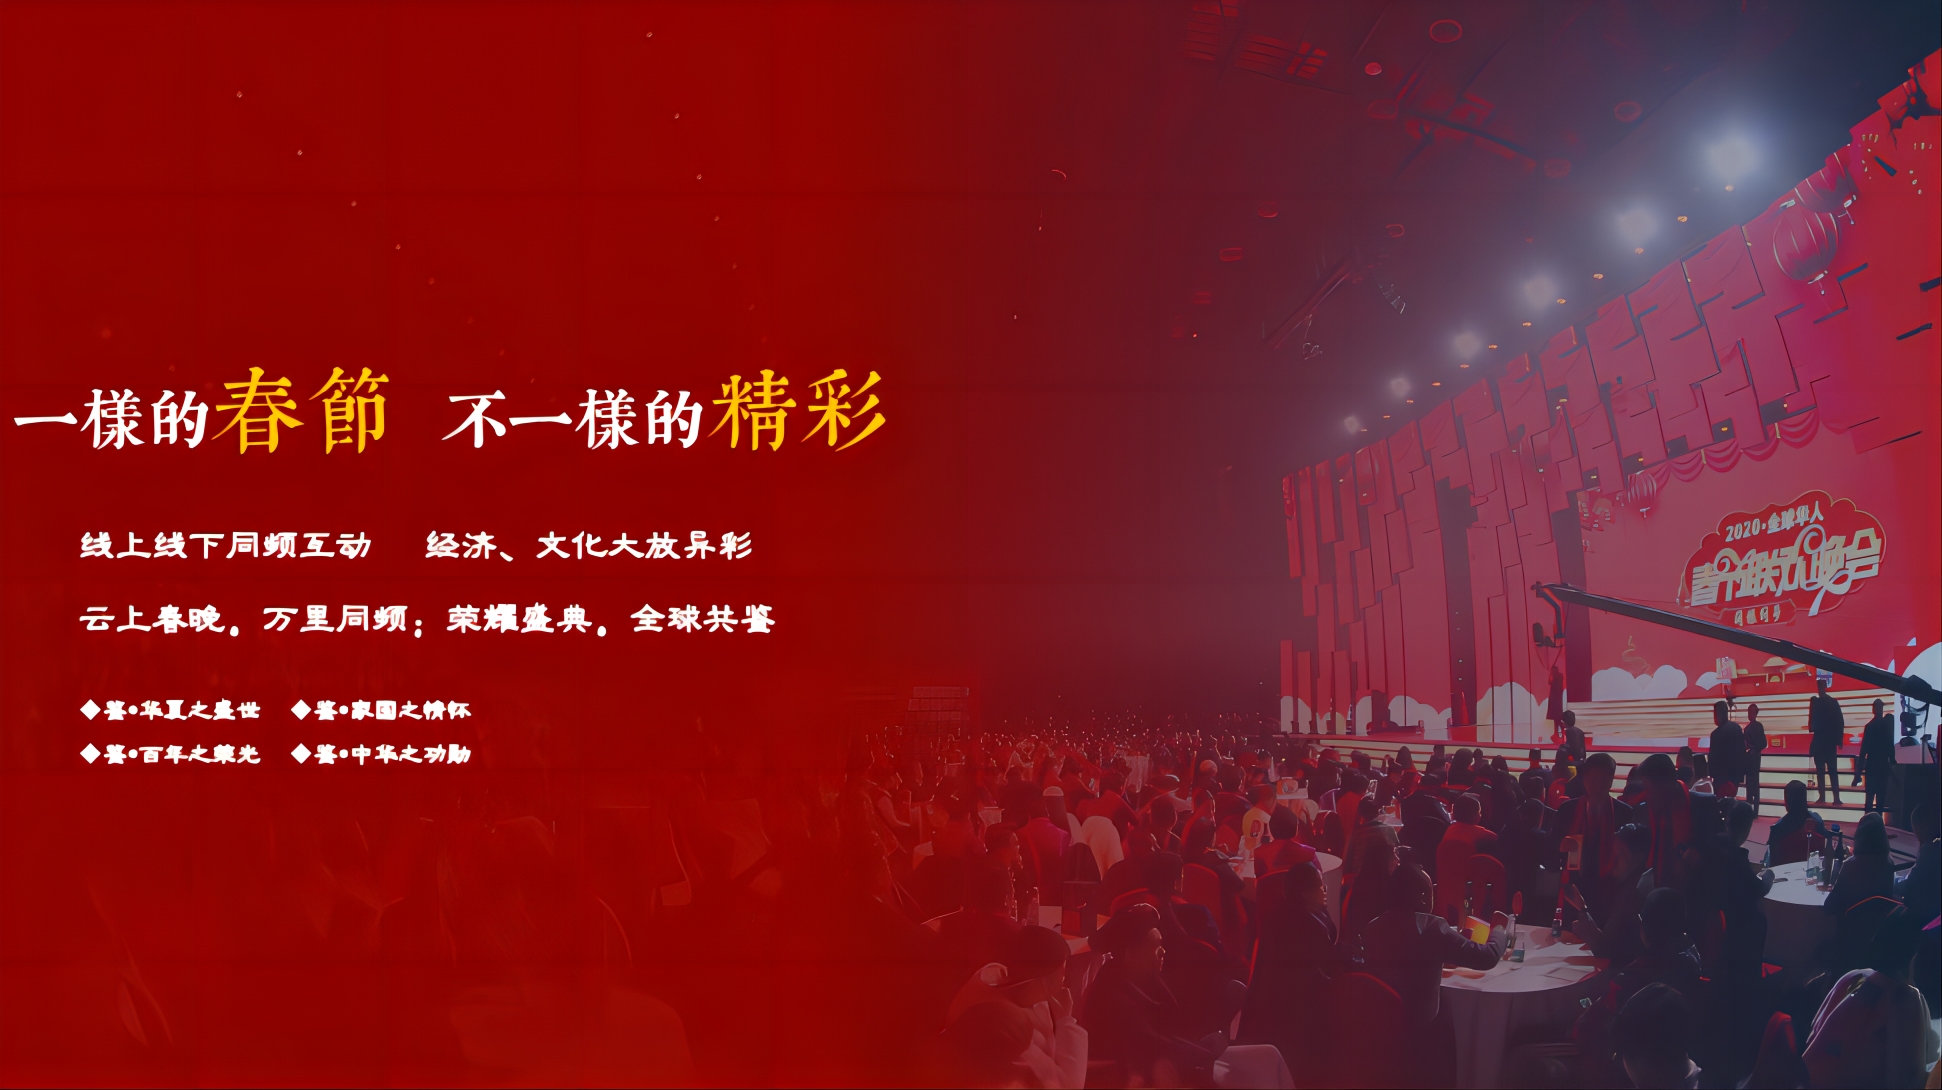 同根同梦·2023全球华人春节联欢晚会暨华夏商业领袖峰会正式启动